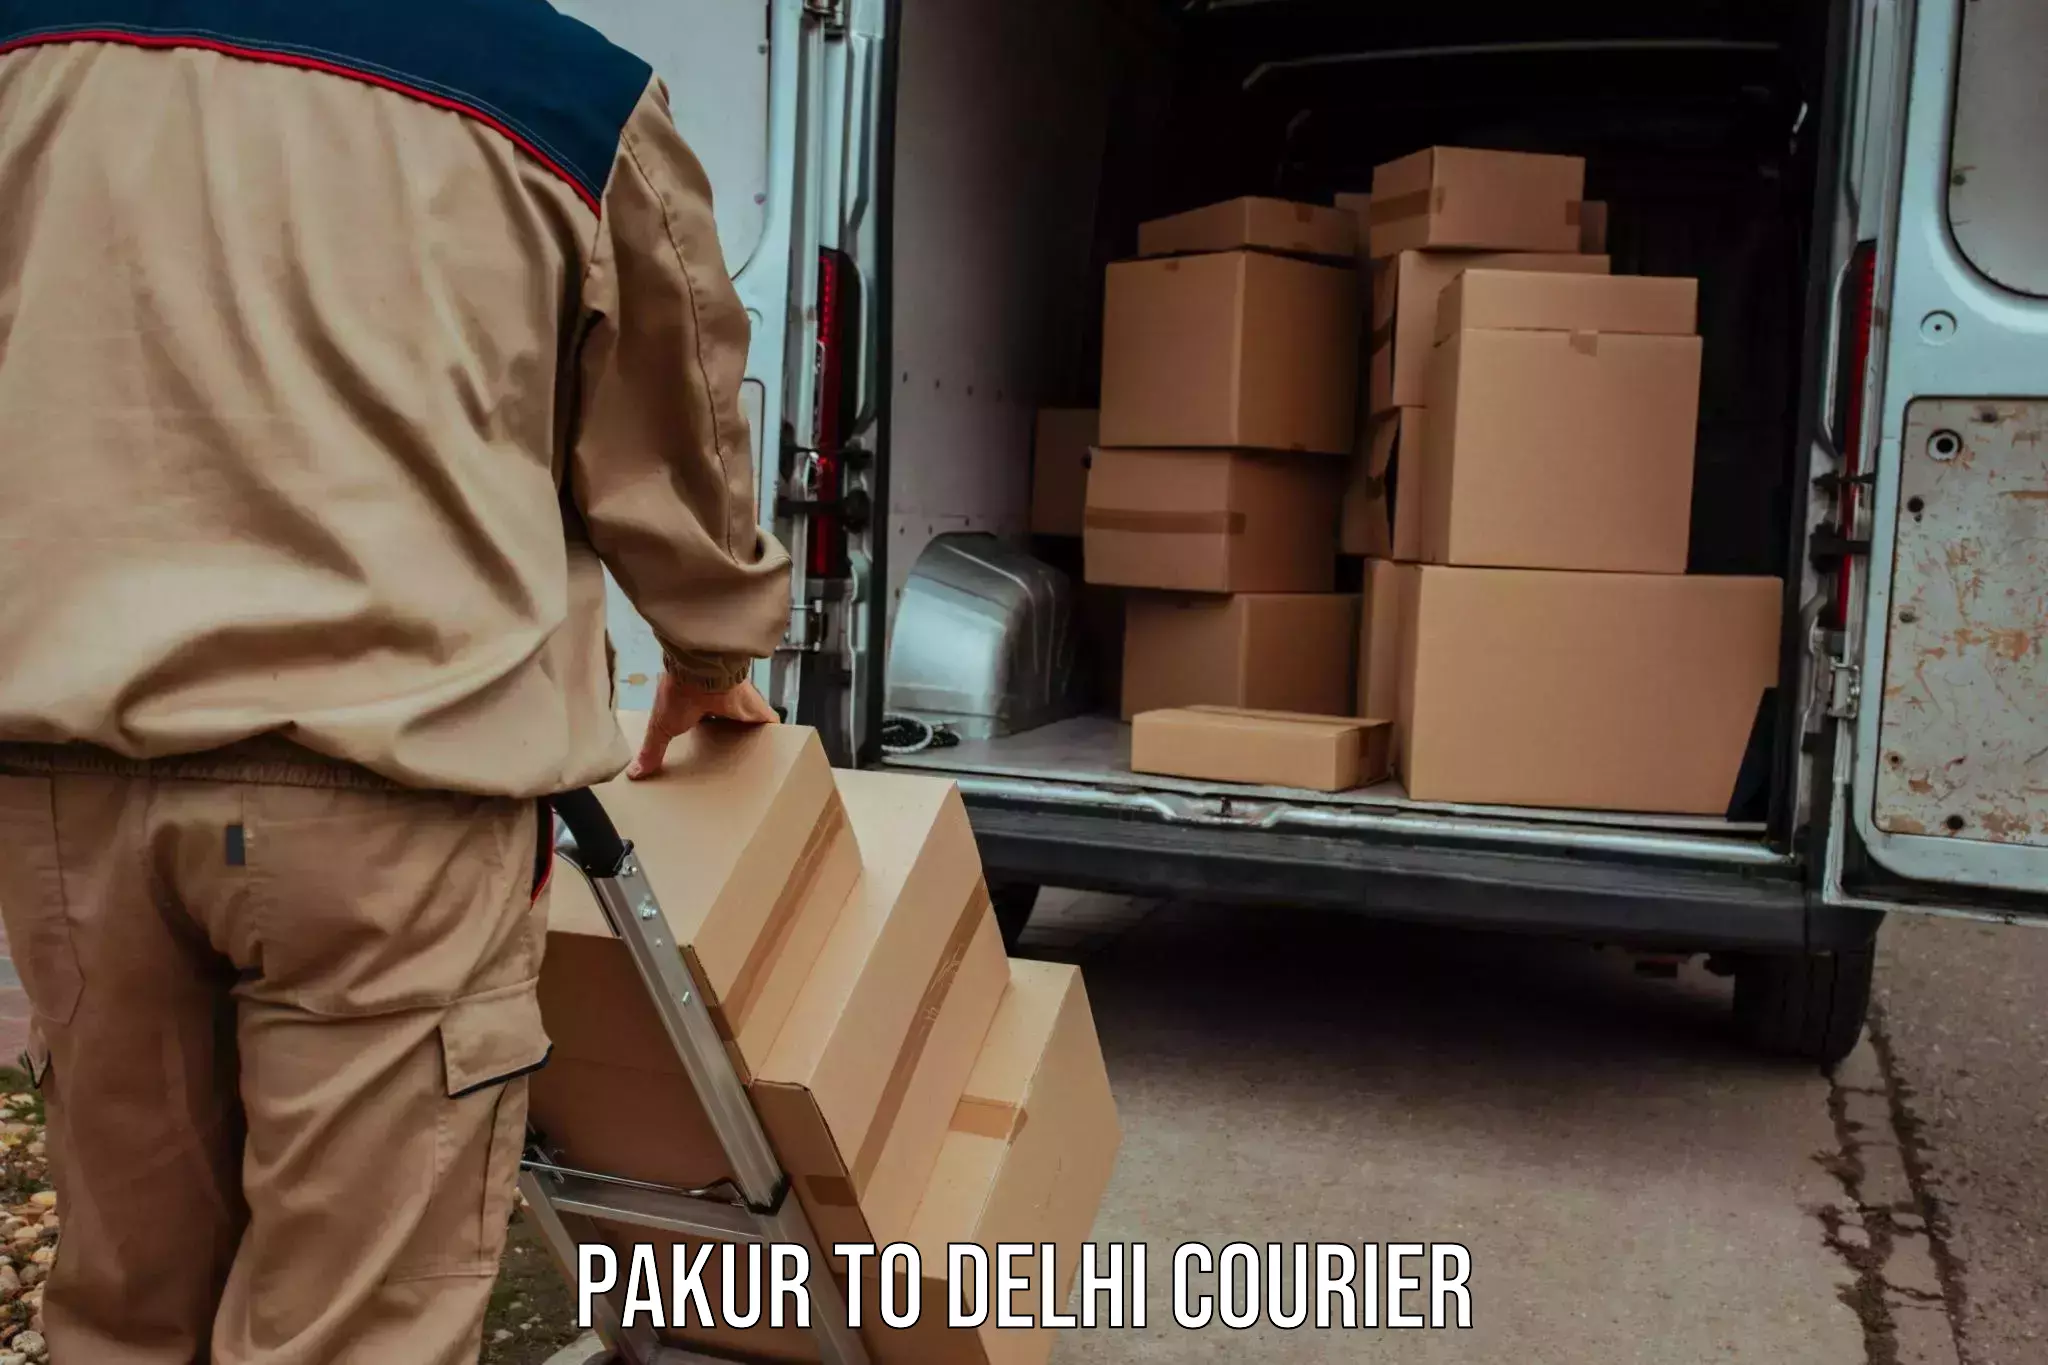 Courier service innovation Pakur to Jamia Millia Islamia New Delhi